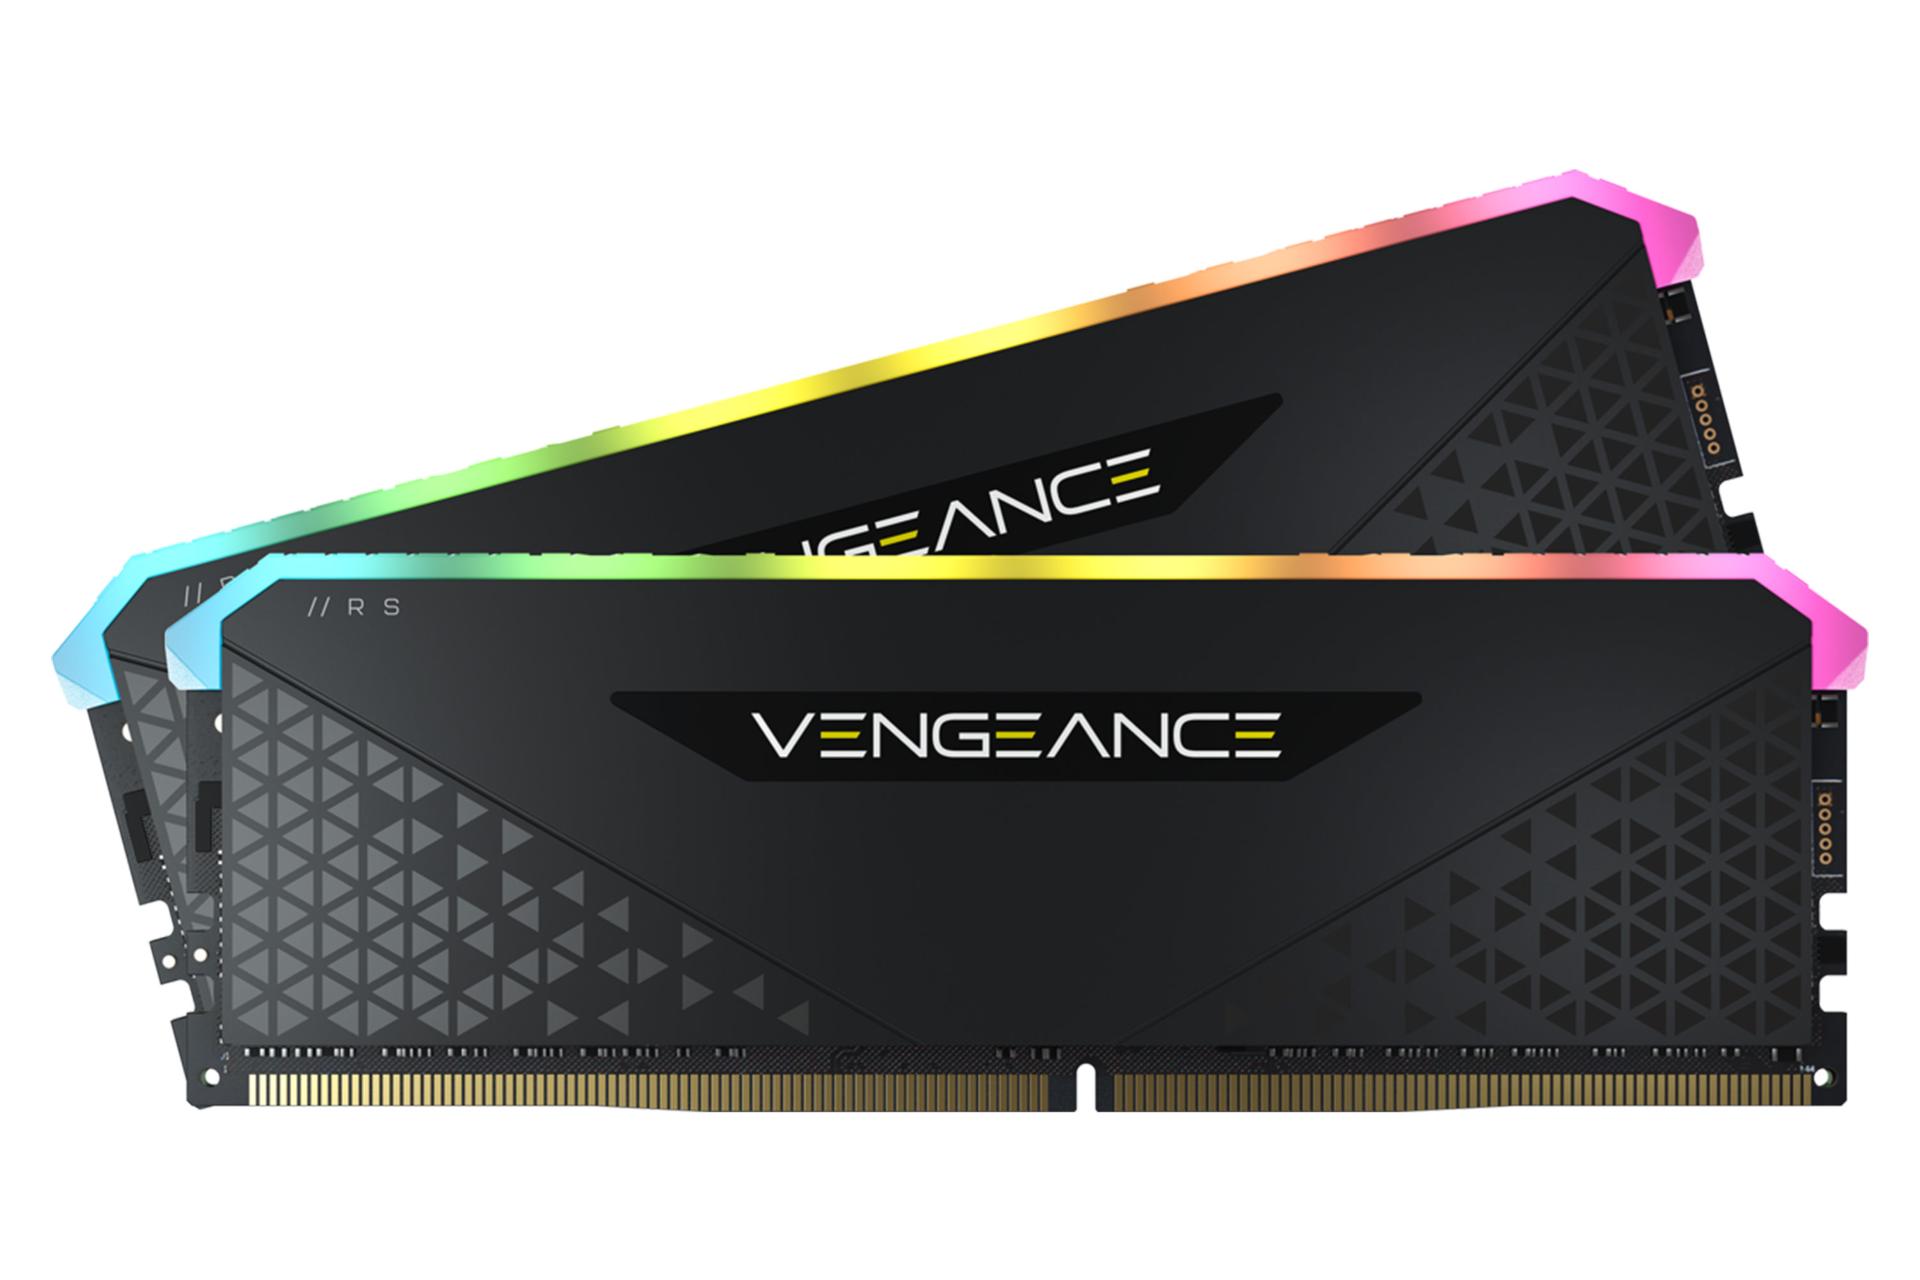  رم کورسیر VENGEANCE RGB RS ظرفیت 32 گیگابایت (2x16) از نوع DDR4-3200 